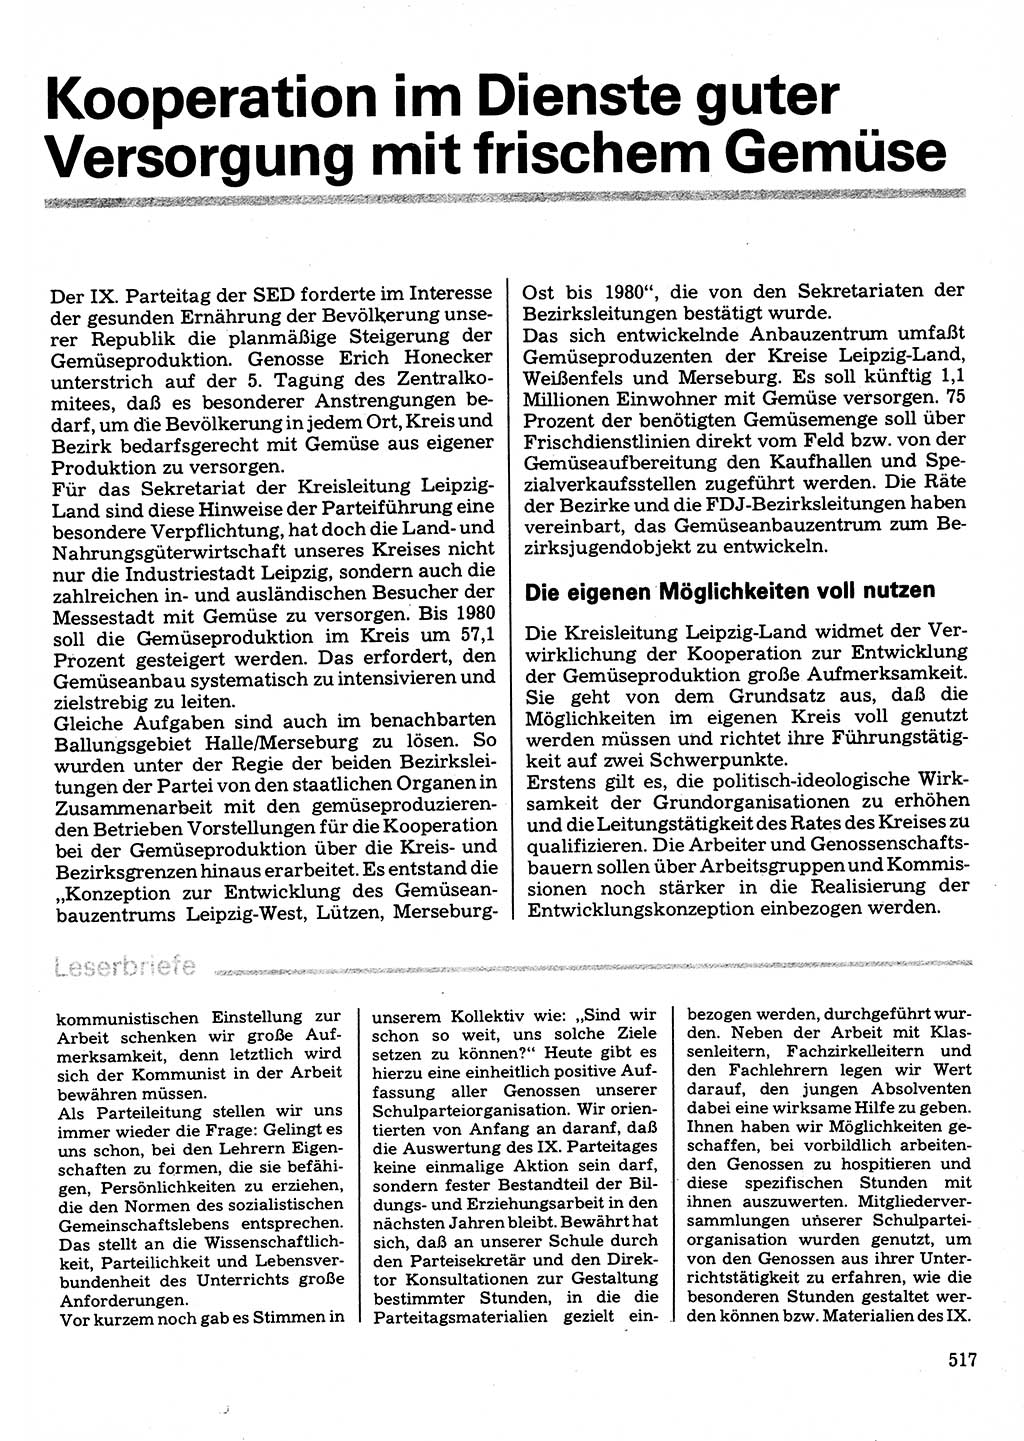 Neuer Weg (NW), Organ des Zentralkomitees (ZK) der SED (Sozialistische Einheitspartei Deutschlands) für Fragen des Parteilebens, 32. Jahrgang [Deutsche Demokratische Republik (DDR)] 1977, Seite 517 (NW ZK SED DDR 1977, S. 517)